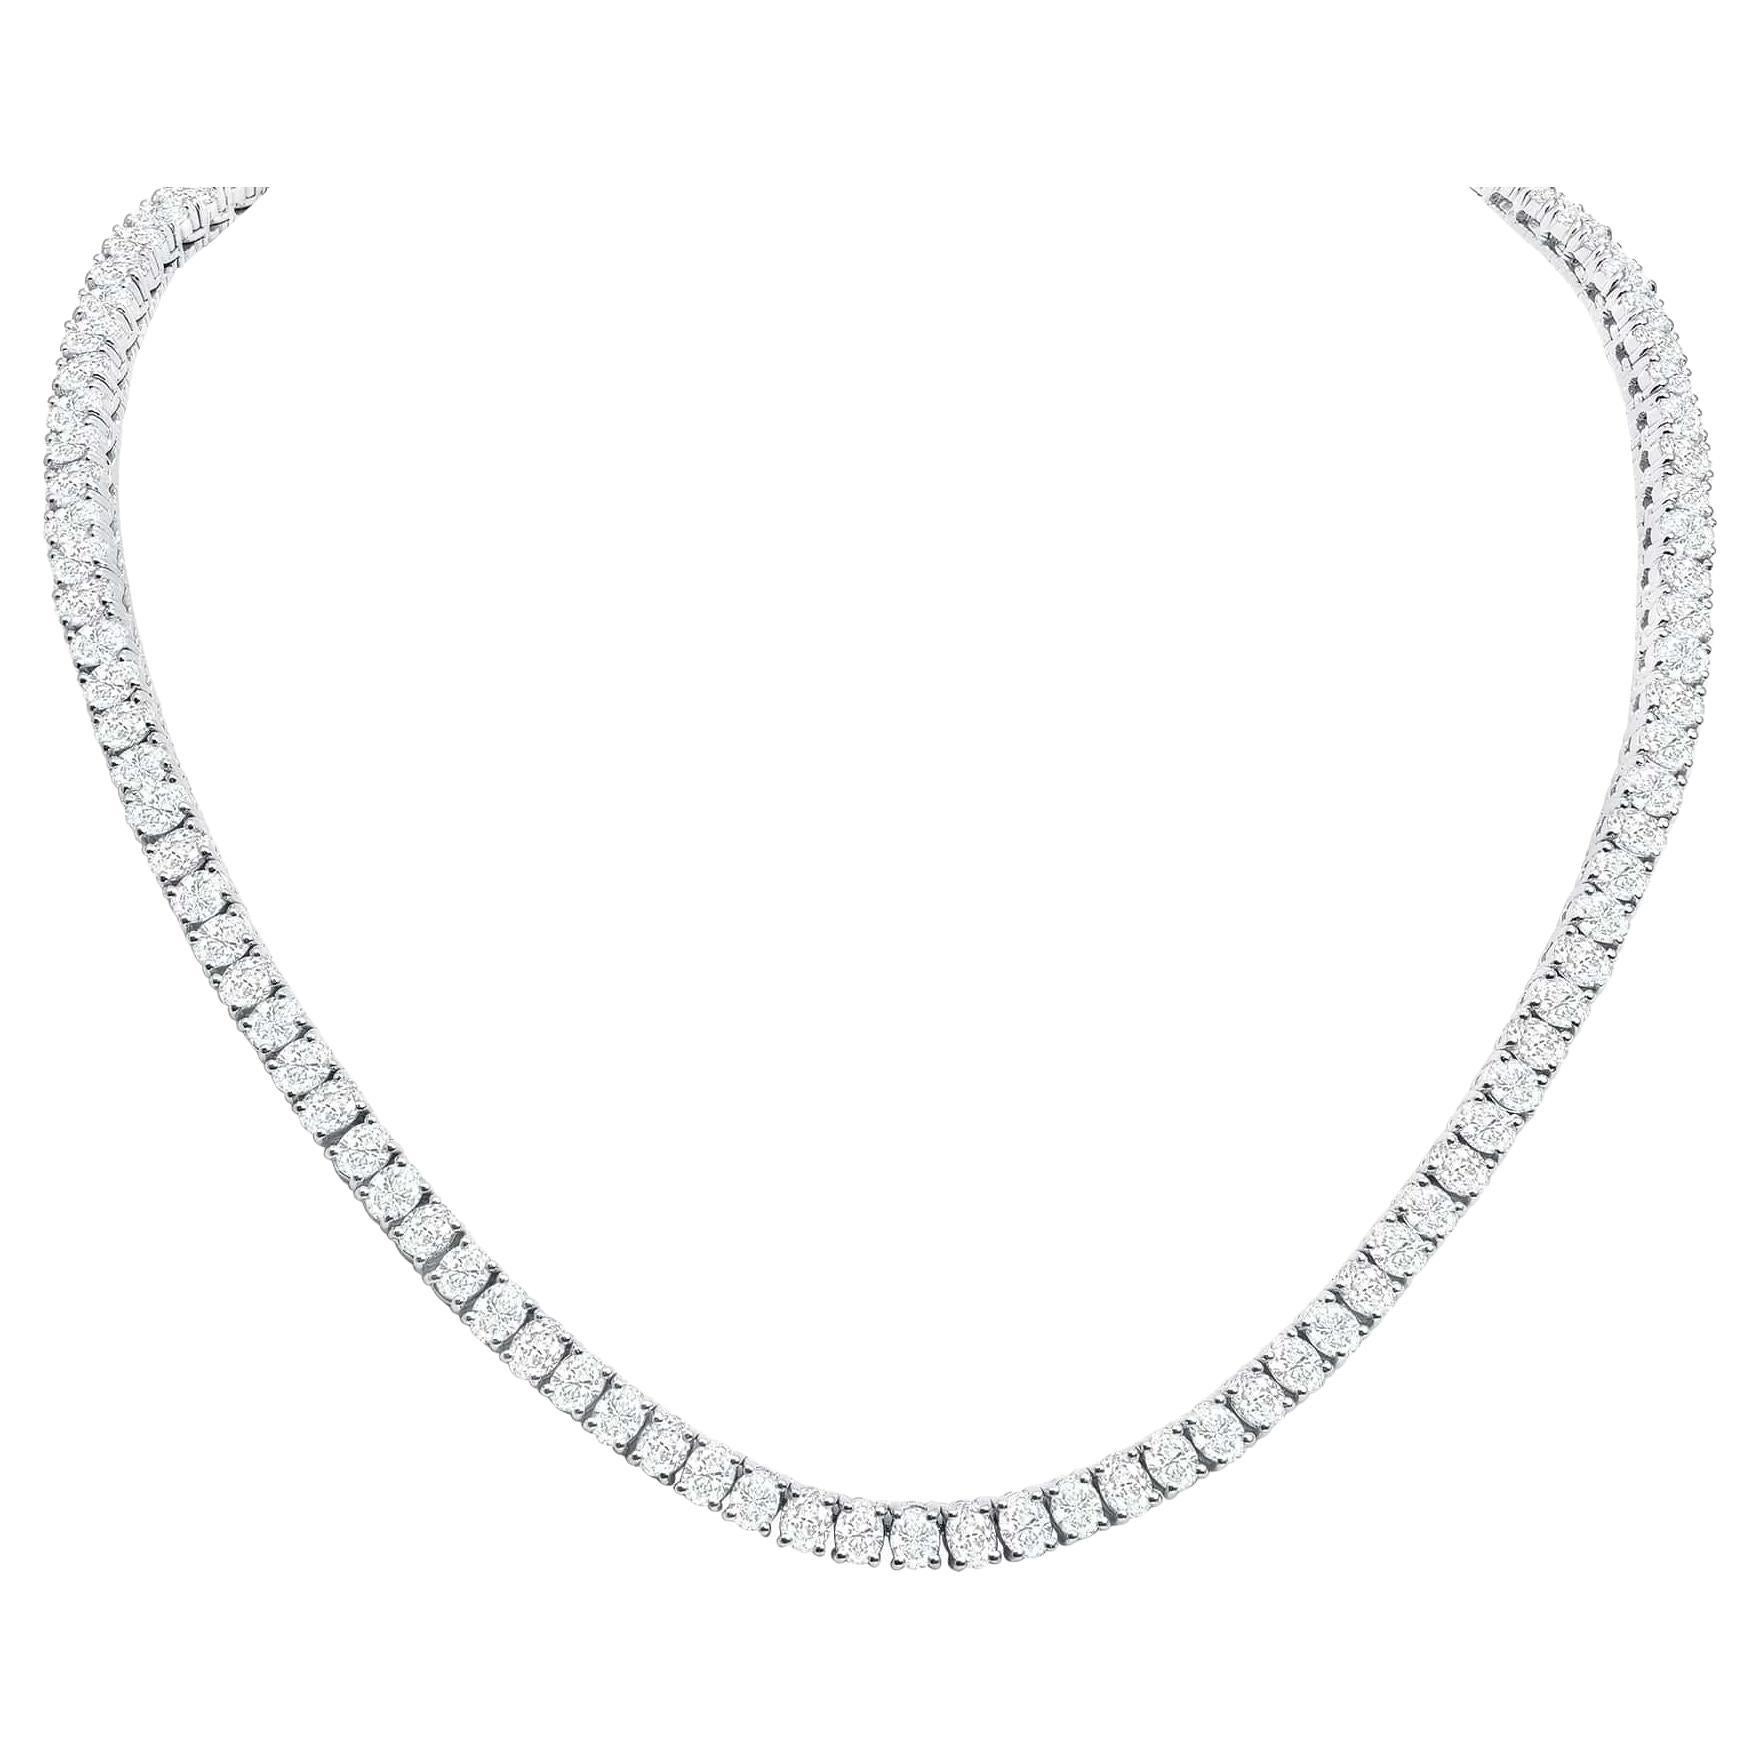 Diese Diamant-Tennis-Halskette zeichnet sich durch wunderschön geschliffene ovale Diamanten aus, die in 18 Karat Gold gefasst sind.

Informationen zur Halskette
Metall : 18k Gold
Diamant-Schliff : Ovaler Naturdiamant 
Diamant Karat gesamt :